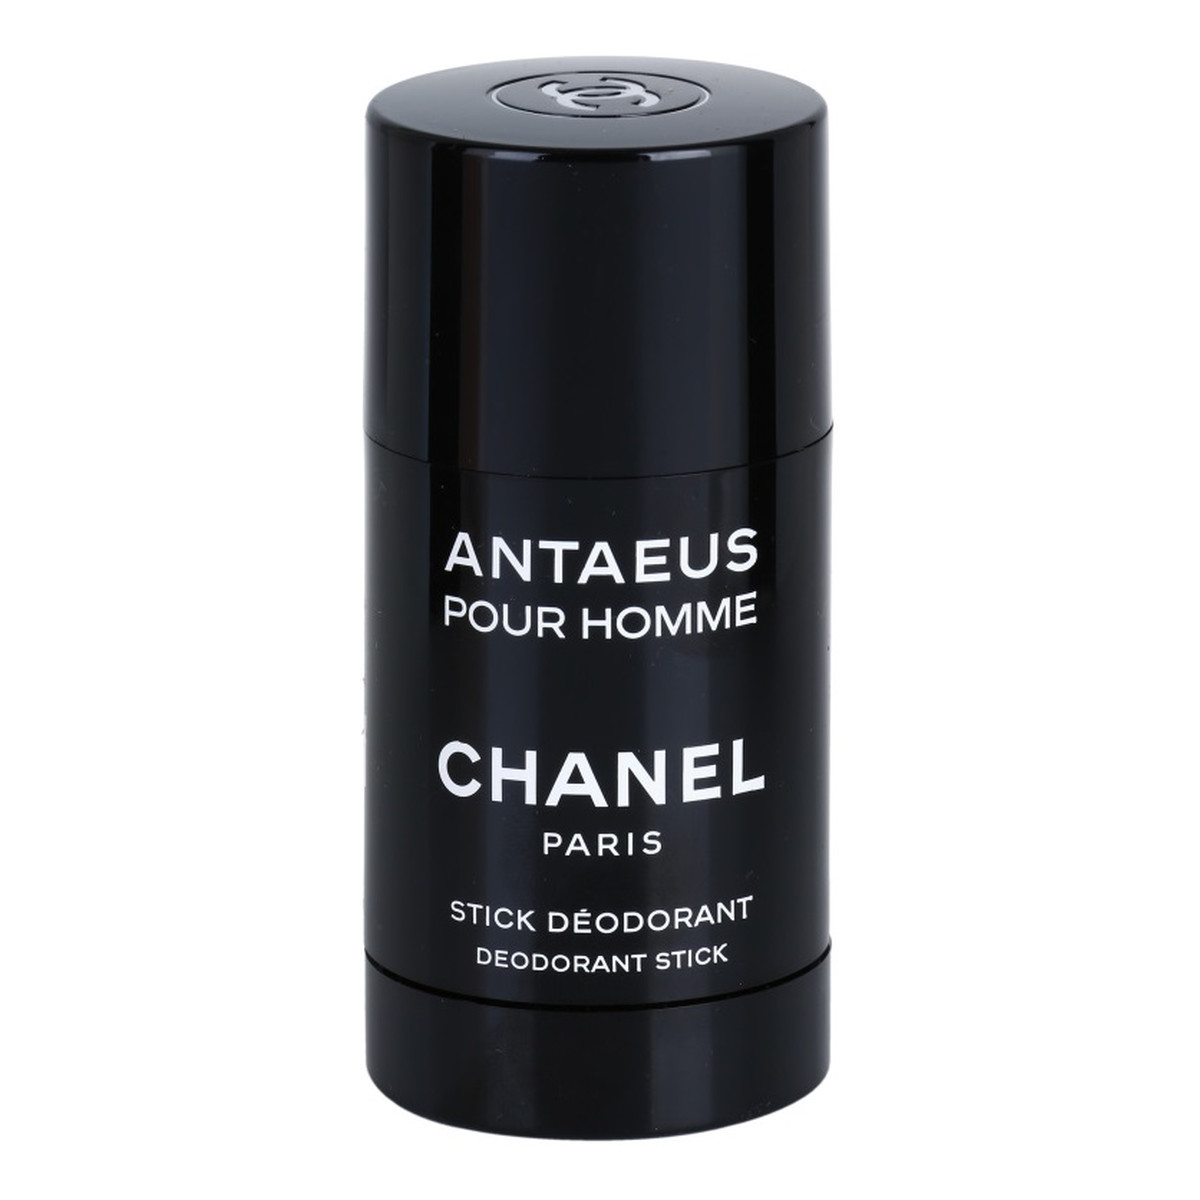 Chanel Antaeus Pour Homme dezodorant sztyft 75ml